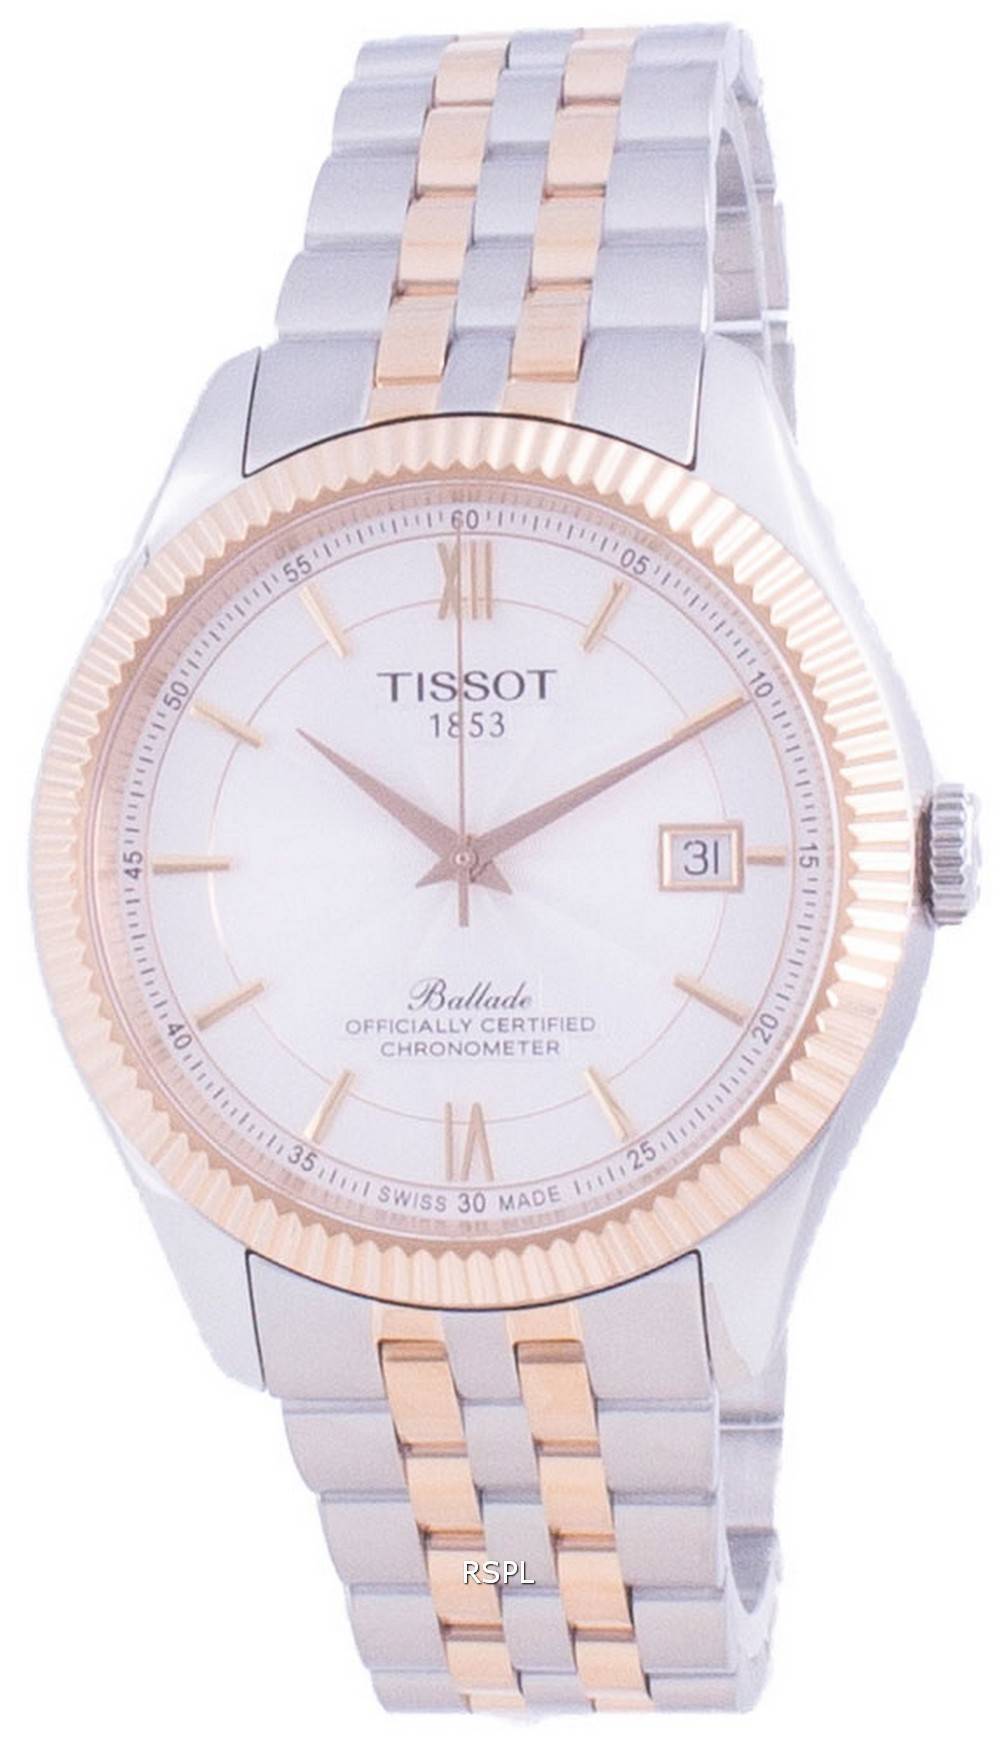 TISSOT BALLADE ティソ バラード 自動巻き パワーマティック80 - 腕時計(アナログ)